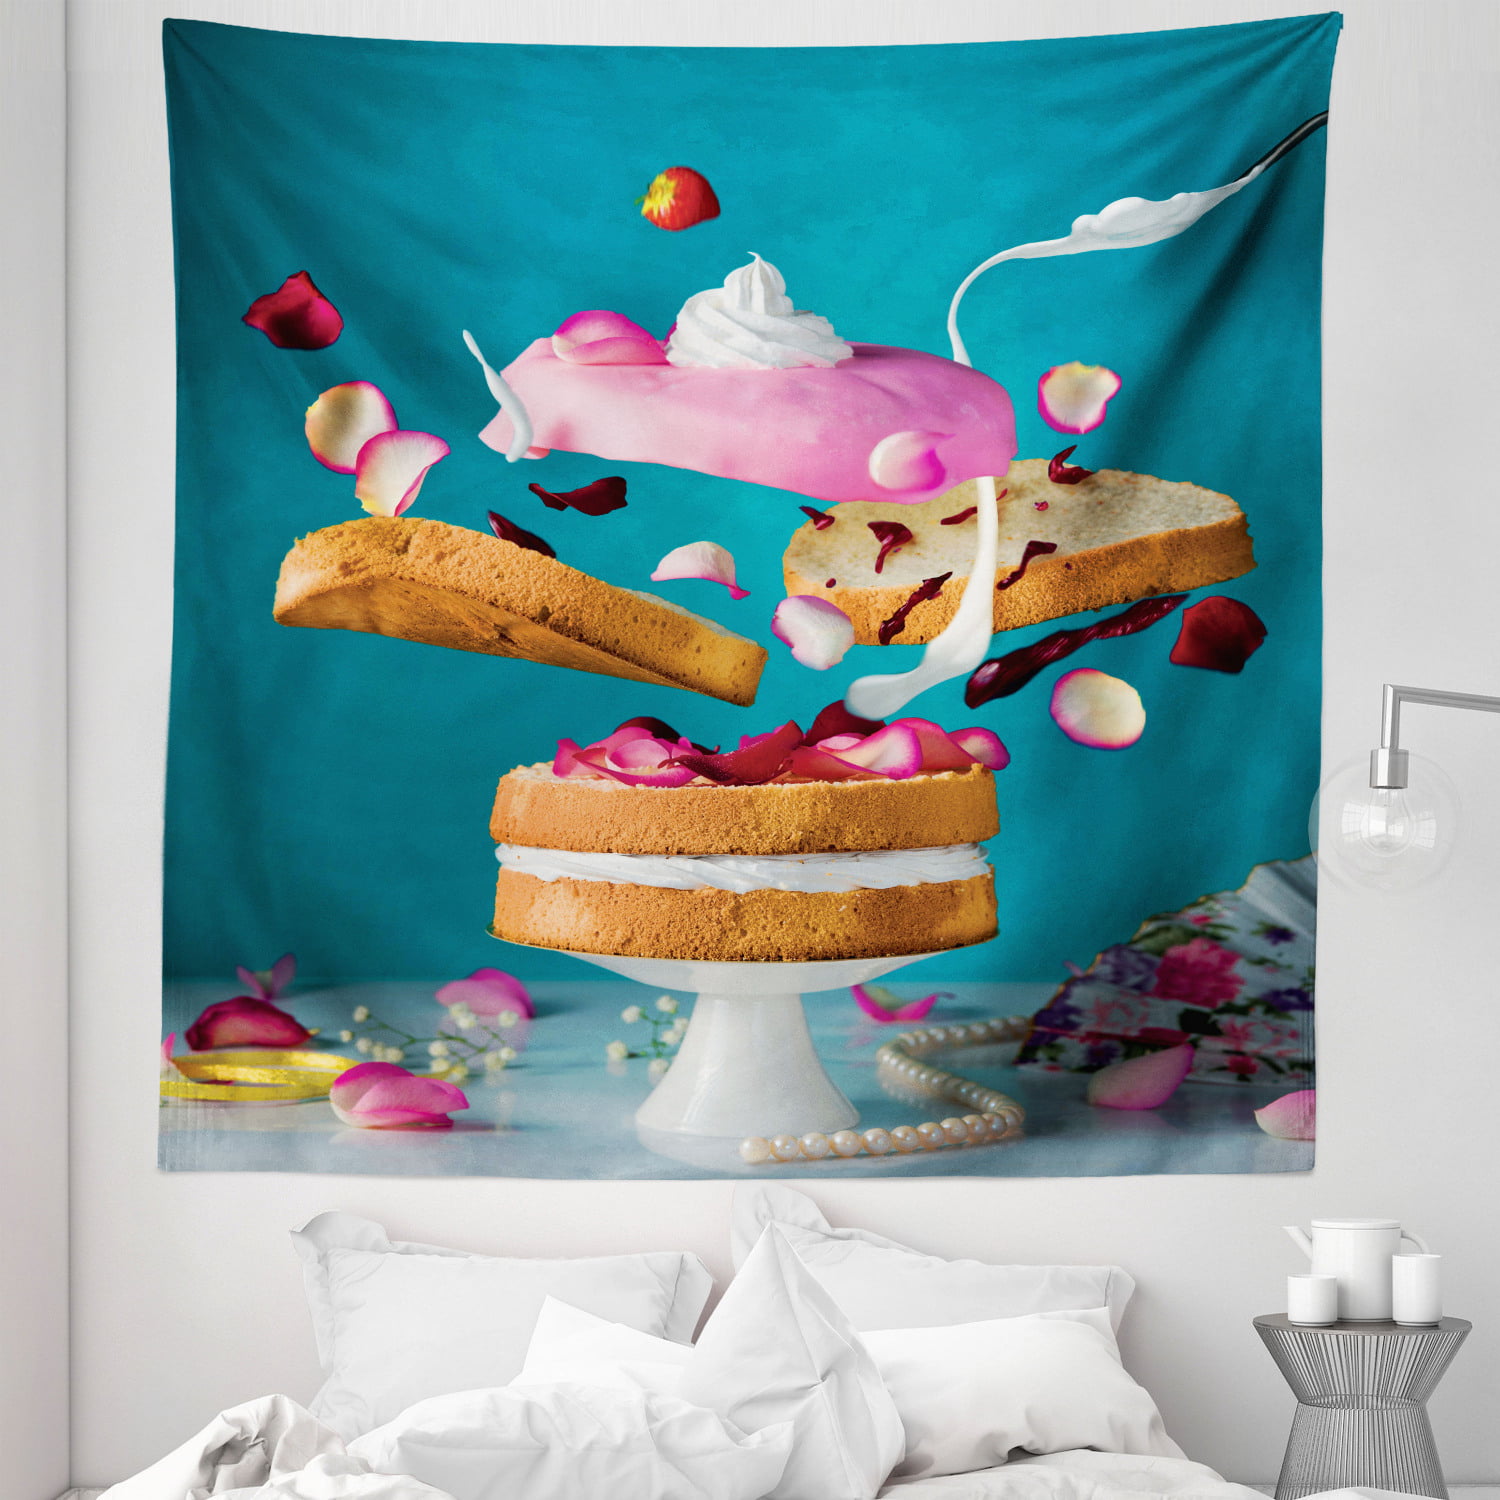 3D Food Dessert Ice Cream Donut Cake Wall Mural Wallpaper GD 5273 |  Jessartdecoration